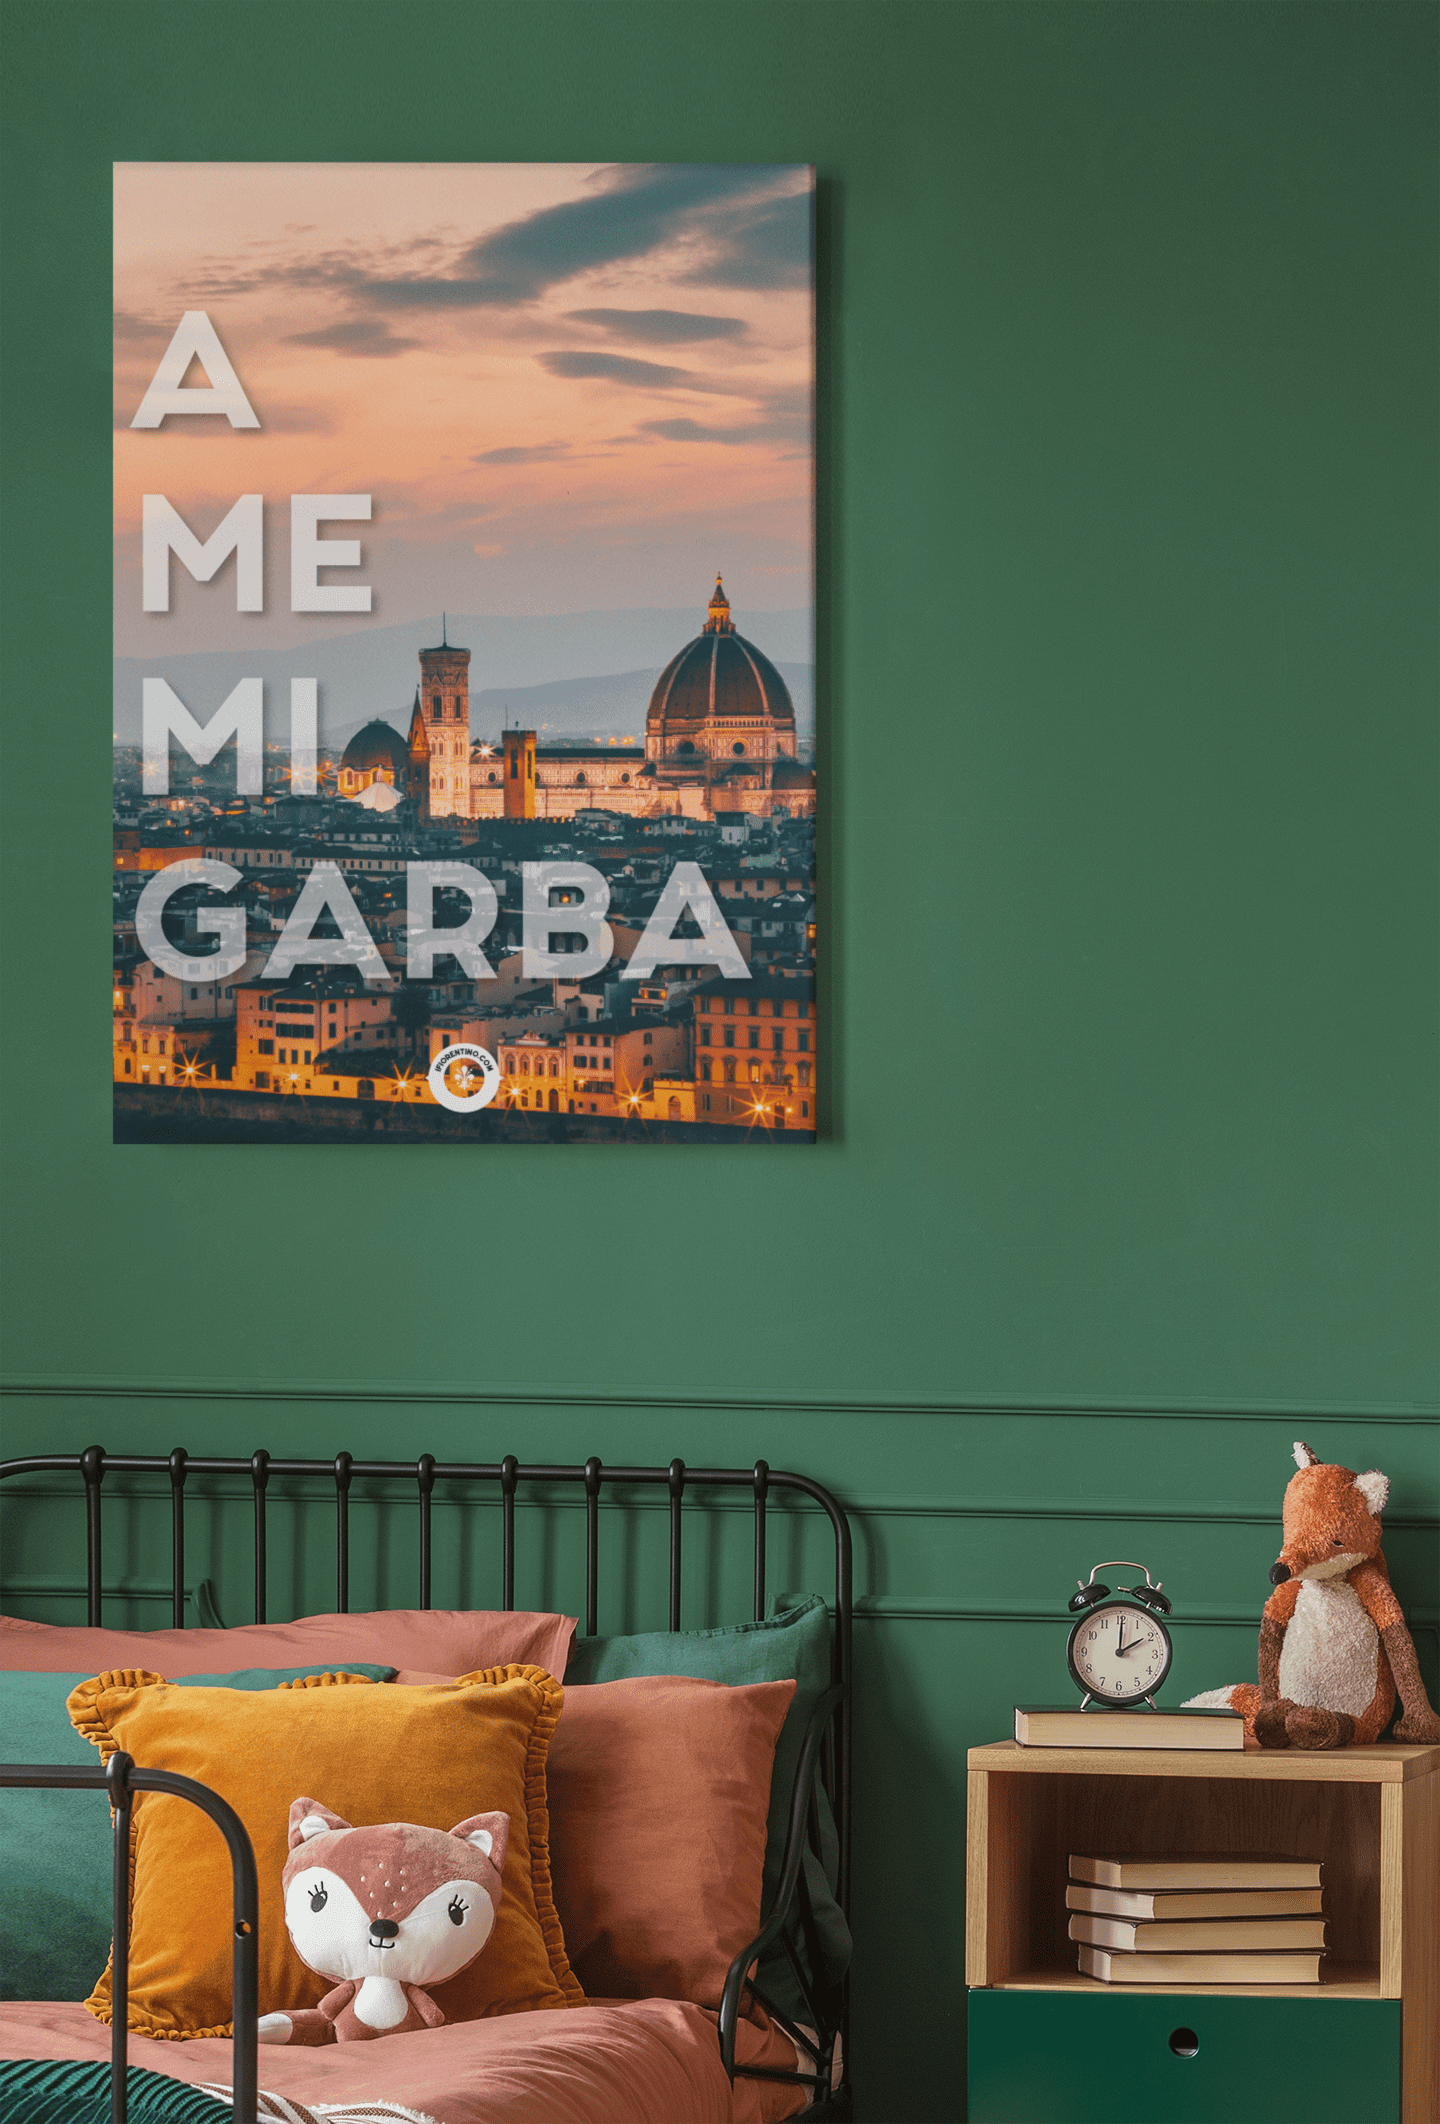 A ME MI GARBA - poster fiorentini - poster firenze - regalo fiorentino - fiorentino  - foppeddittelo